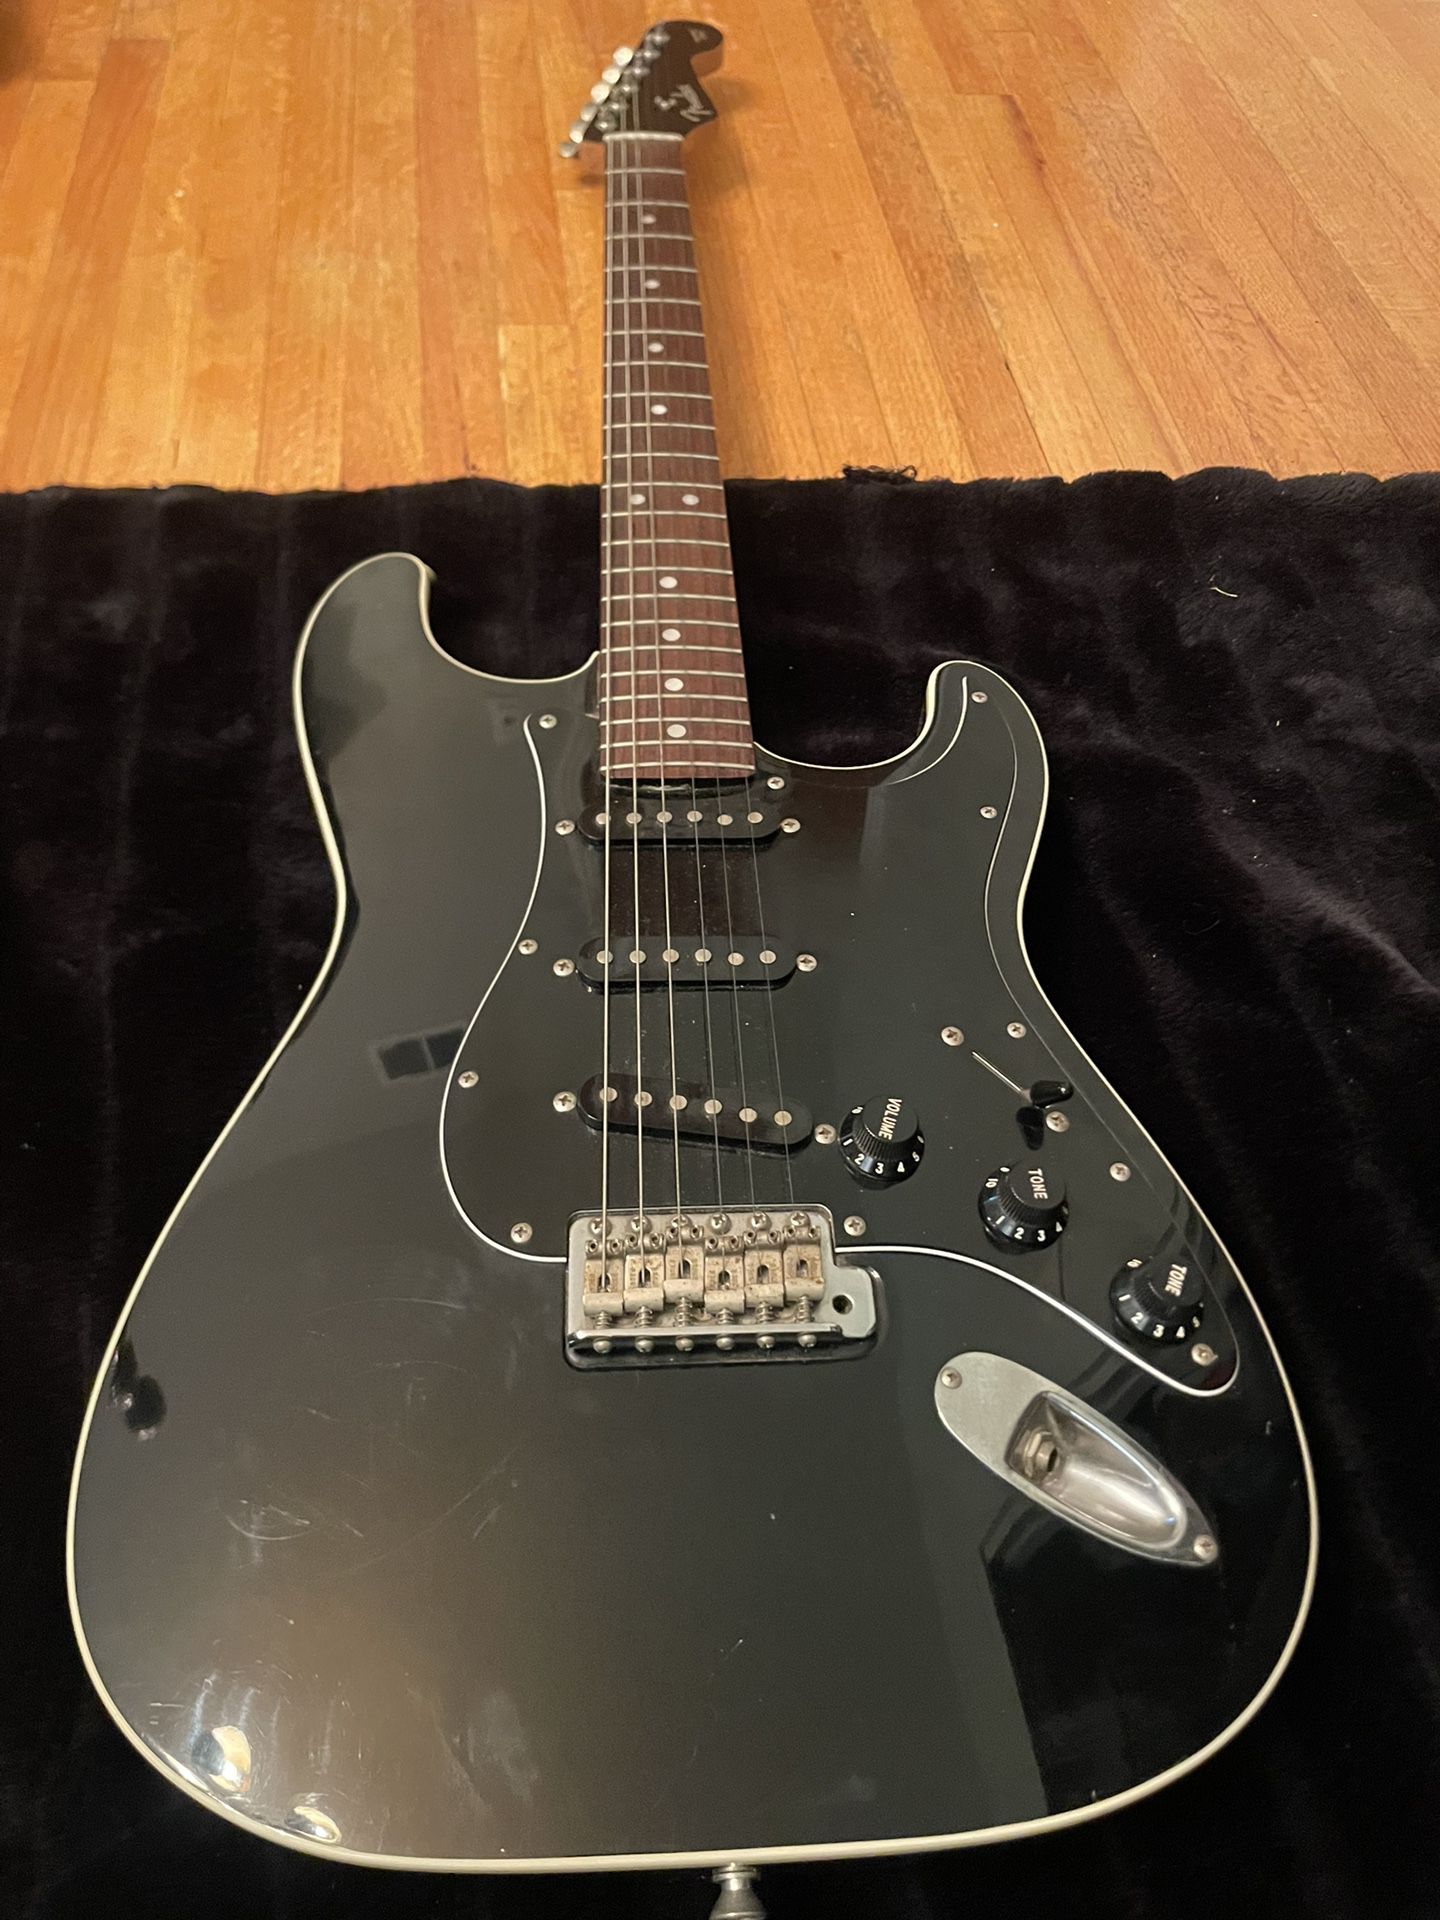 Rare Japanese Fender AST Stratocaster